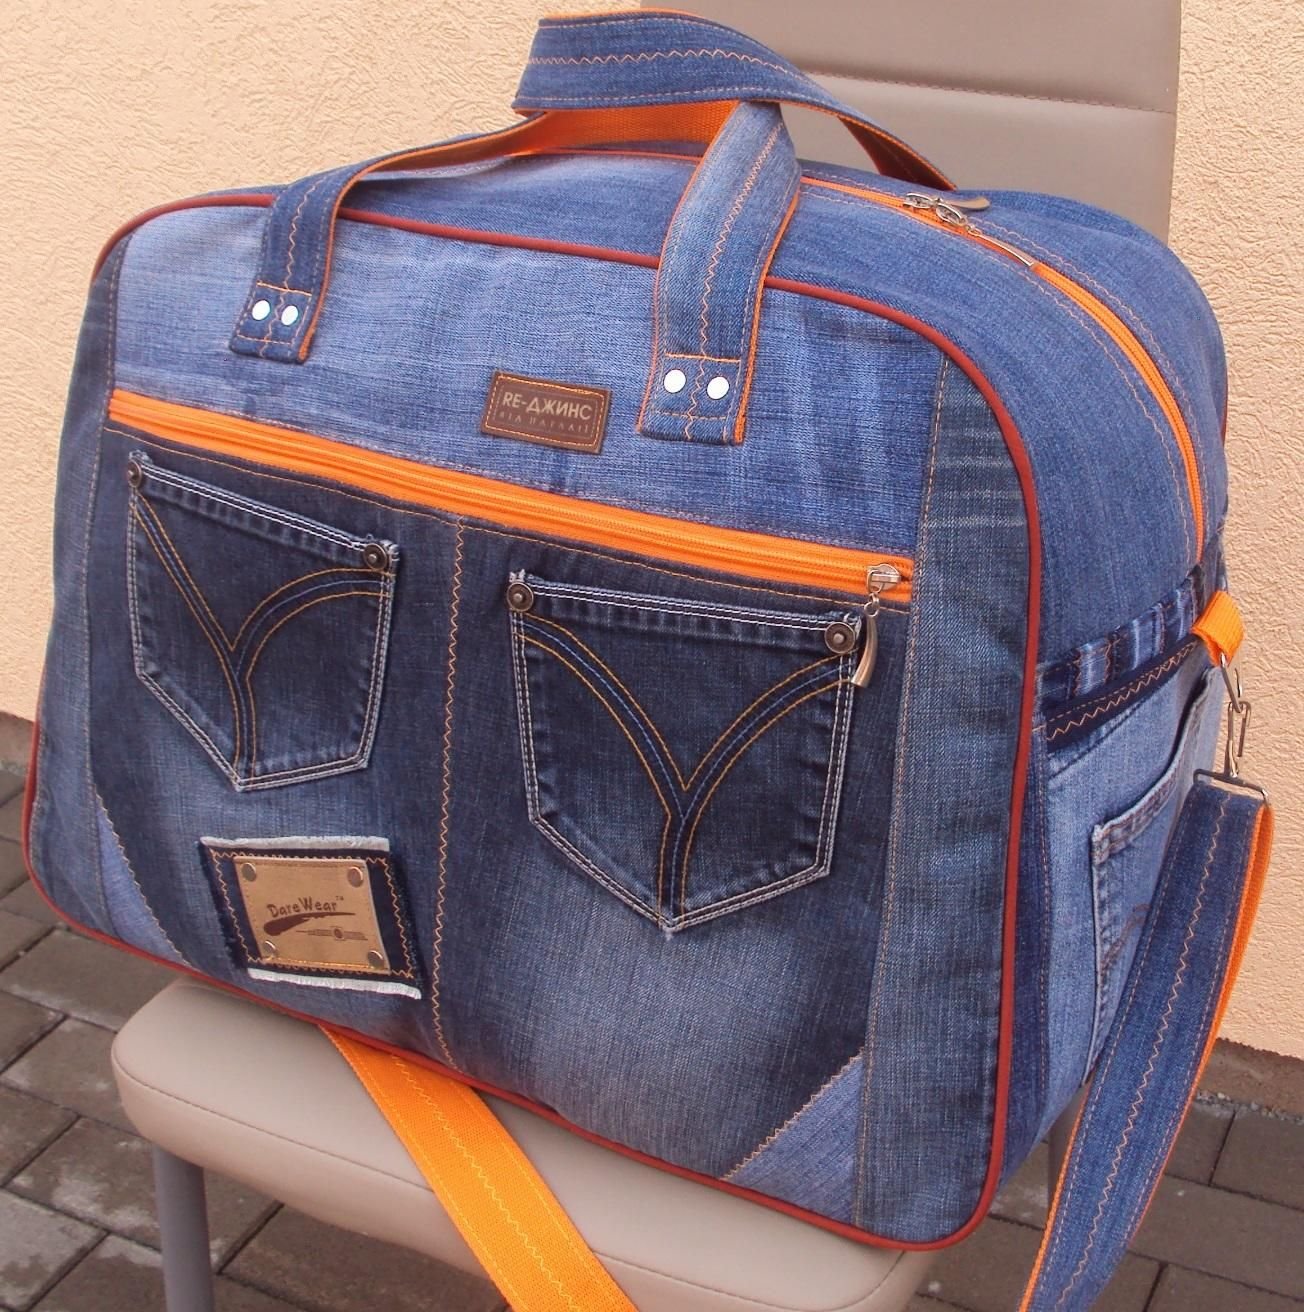 В умелых руках могут родиться роскошные сумки из старых джинсов - смотрим стильные идеи